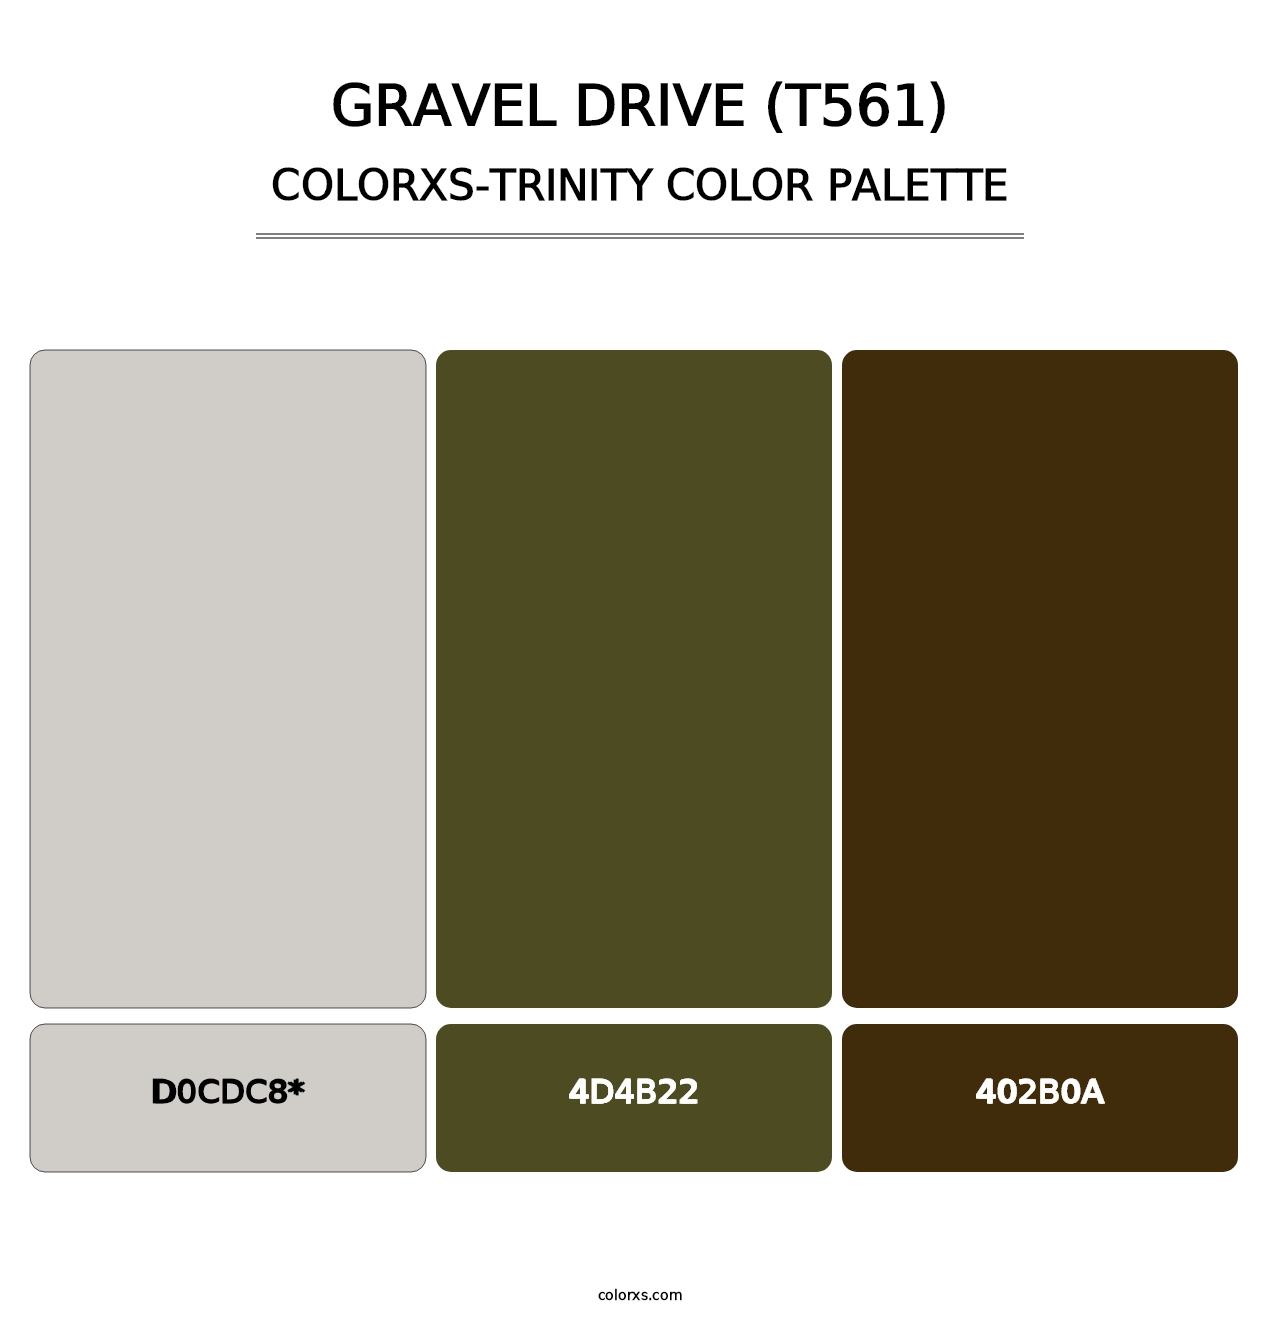 Gravel Drive (T561) - Colorxs Trinity Palette